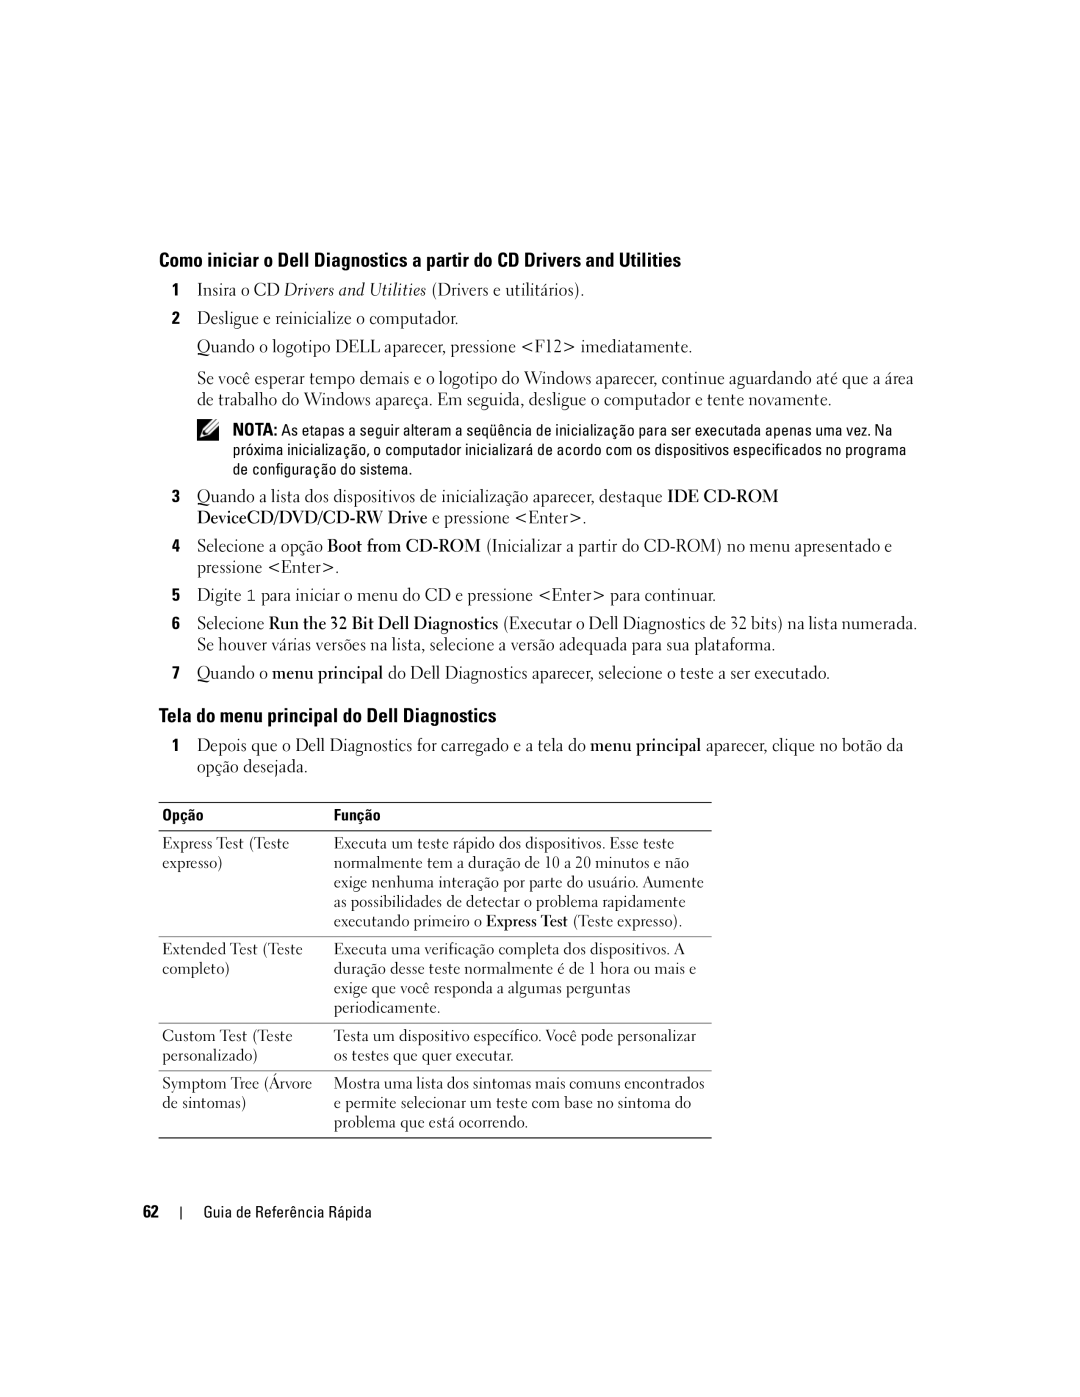 Dell XP065 manual Tela do menu principal do Dell Diagnostics, Opção Função 